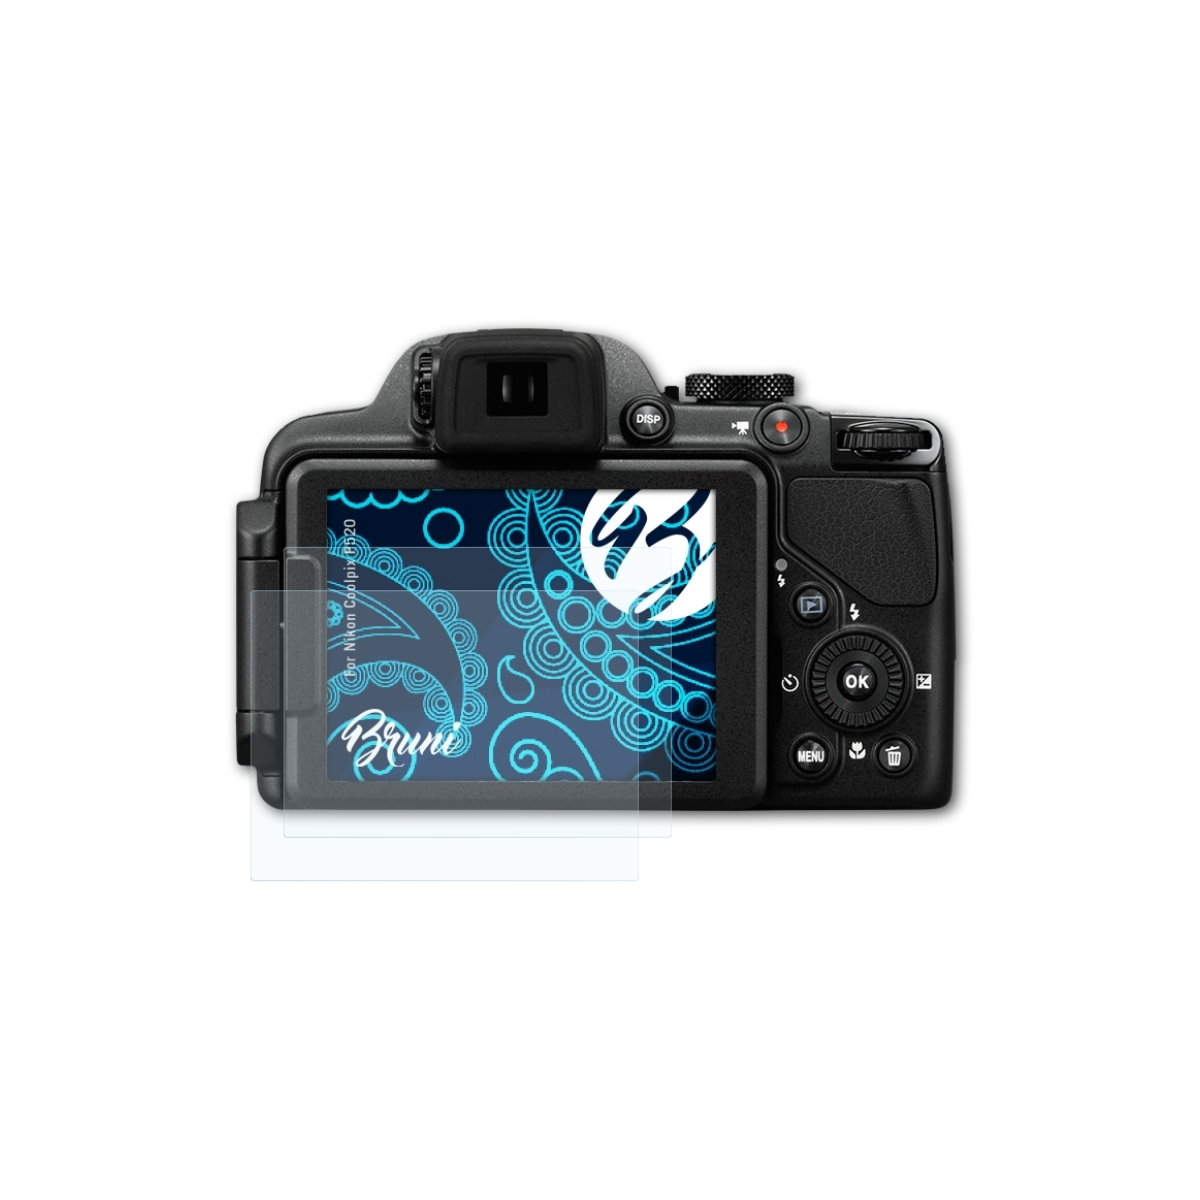 Nikon P520) Basics-Clear Coolpix 2x BRUNI Schutzfolie(für